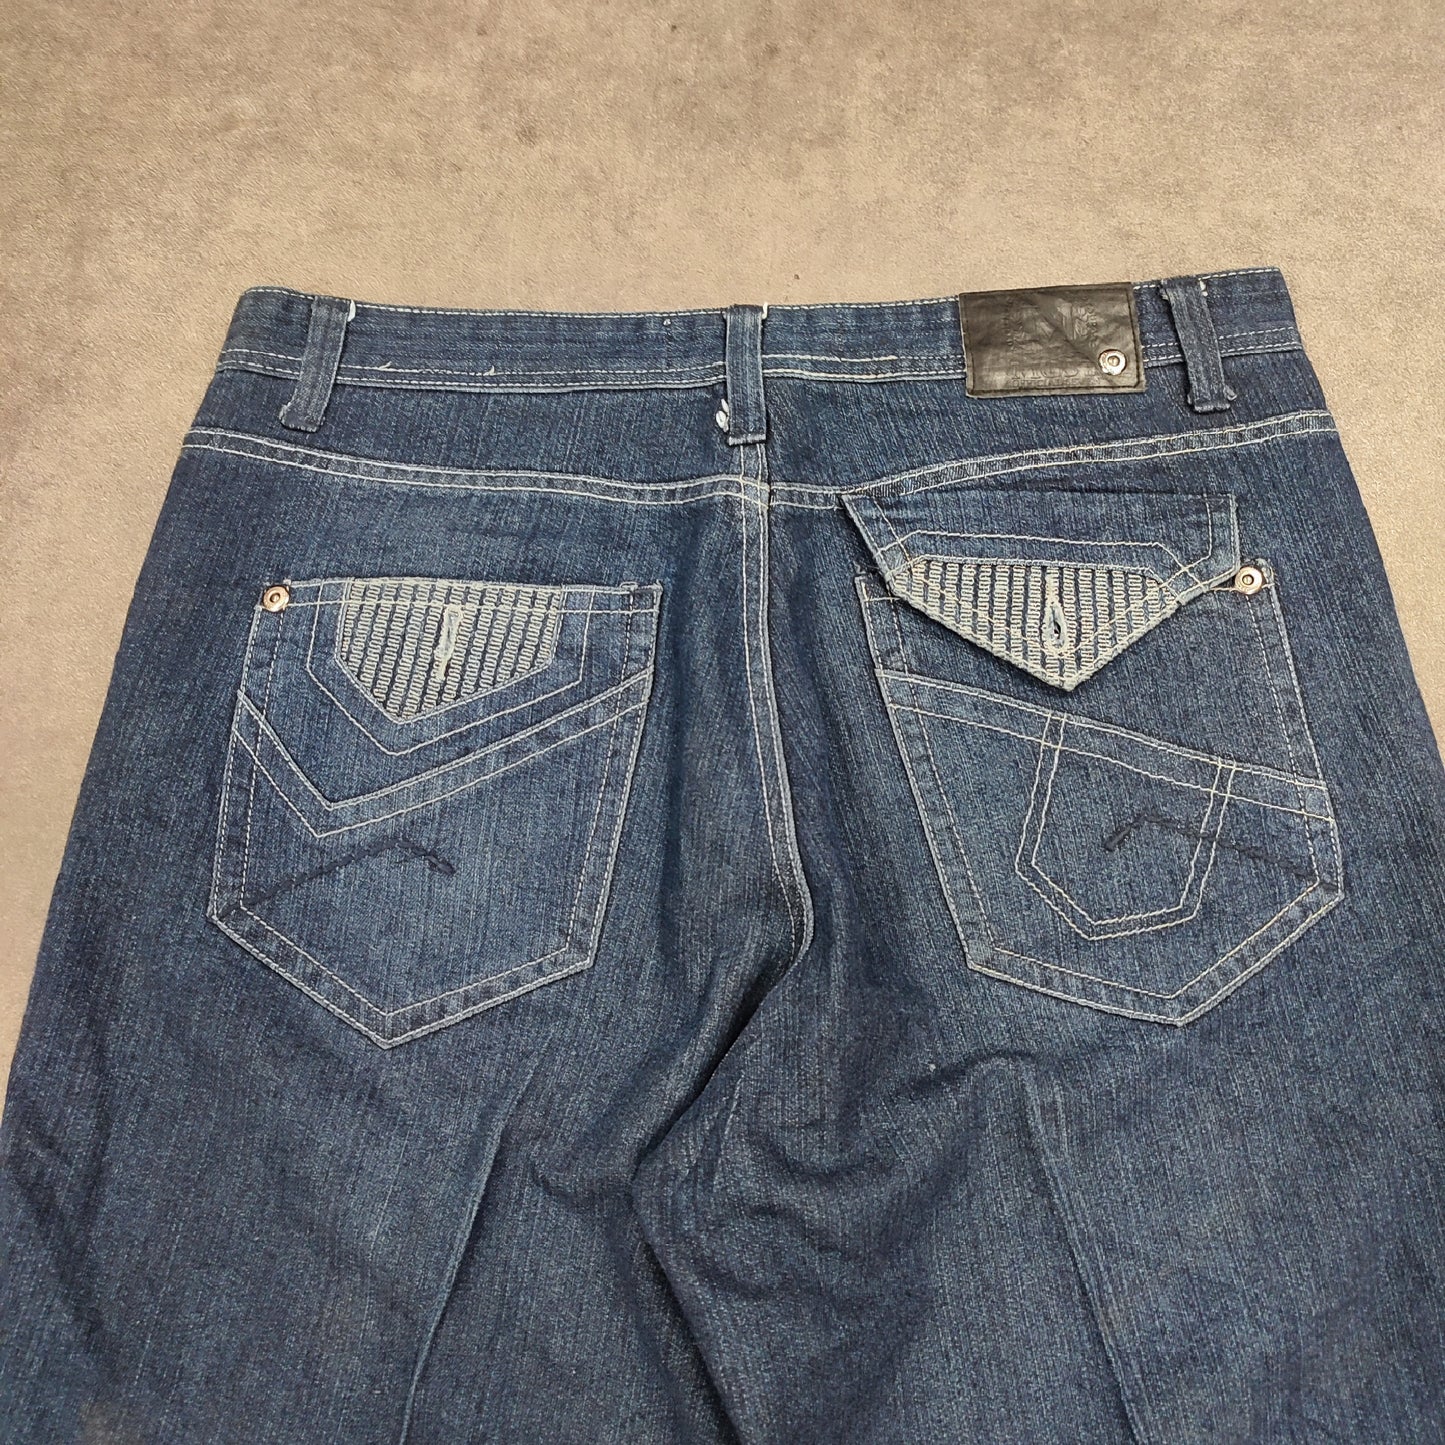 Jort jeans white stitch W38 - FR48